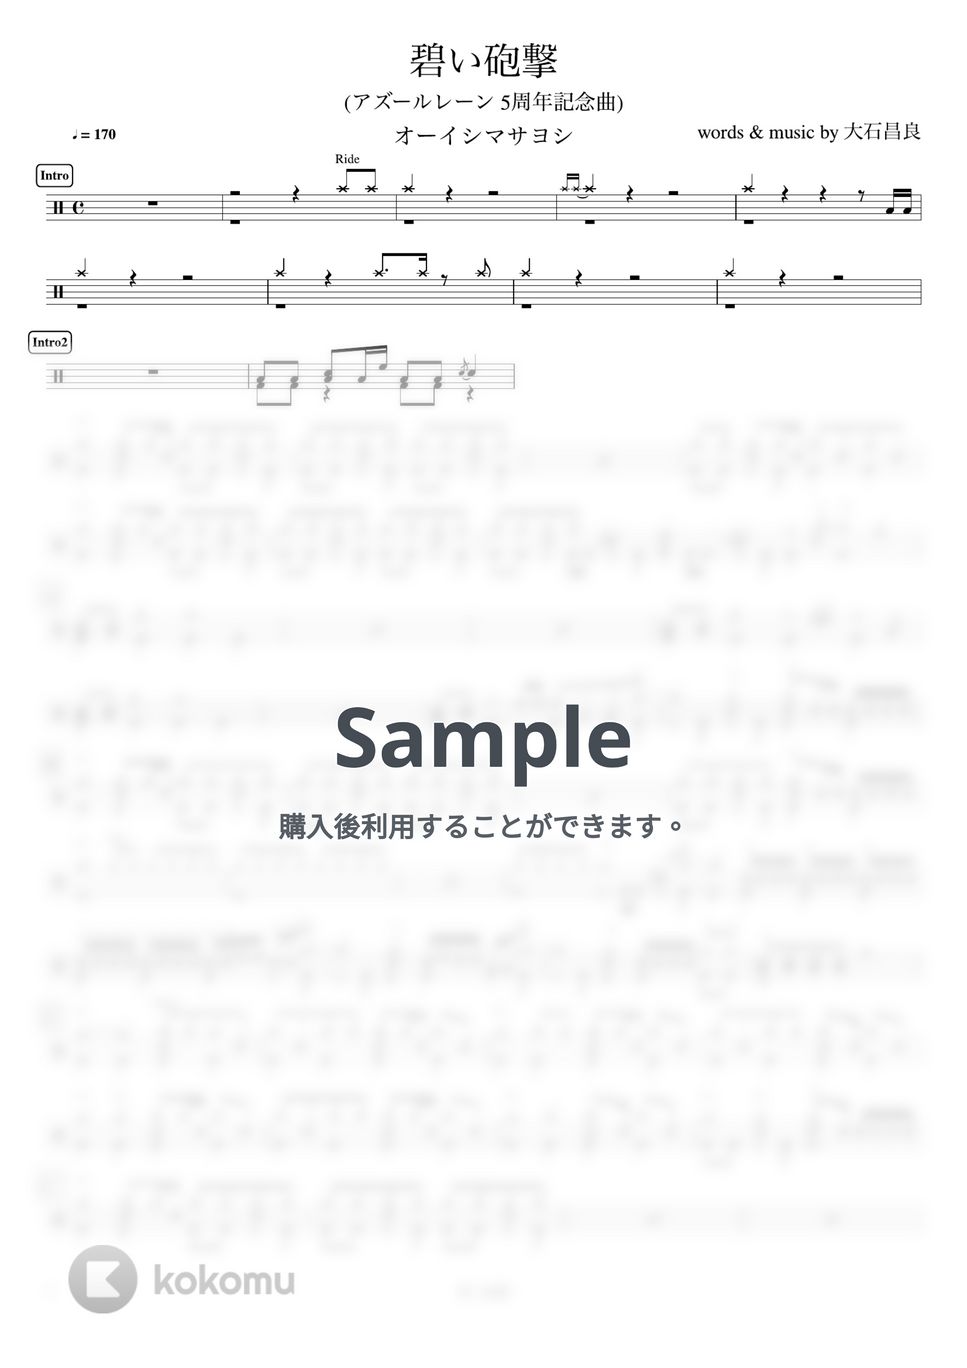 オーイシマサヨシ - 碧い砲撃 (アズールレーン 5周年記念曲) by ドラムが好き！